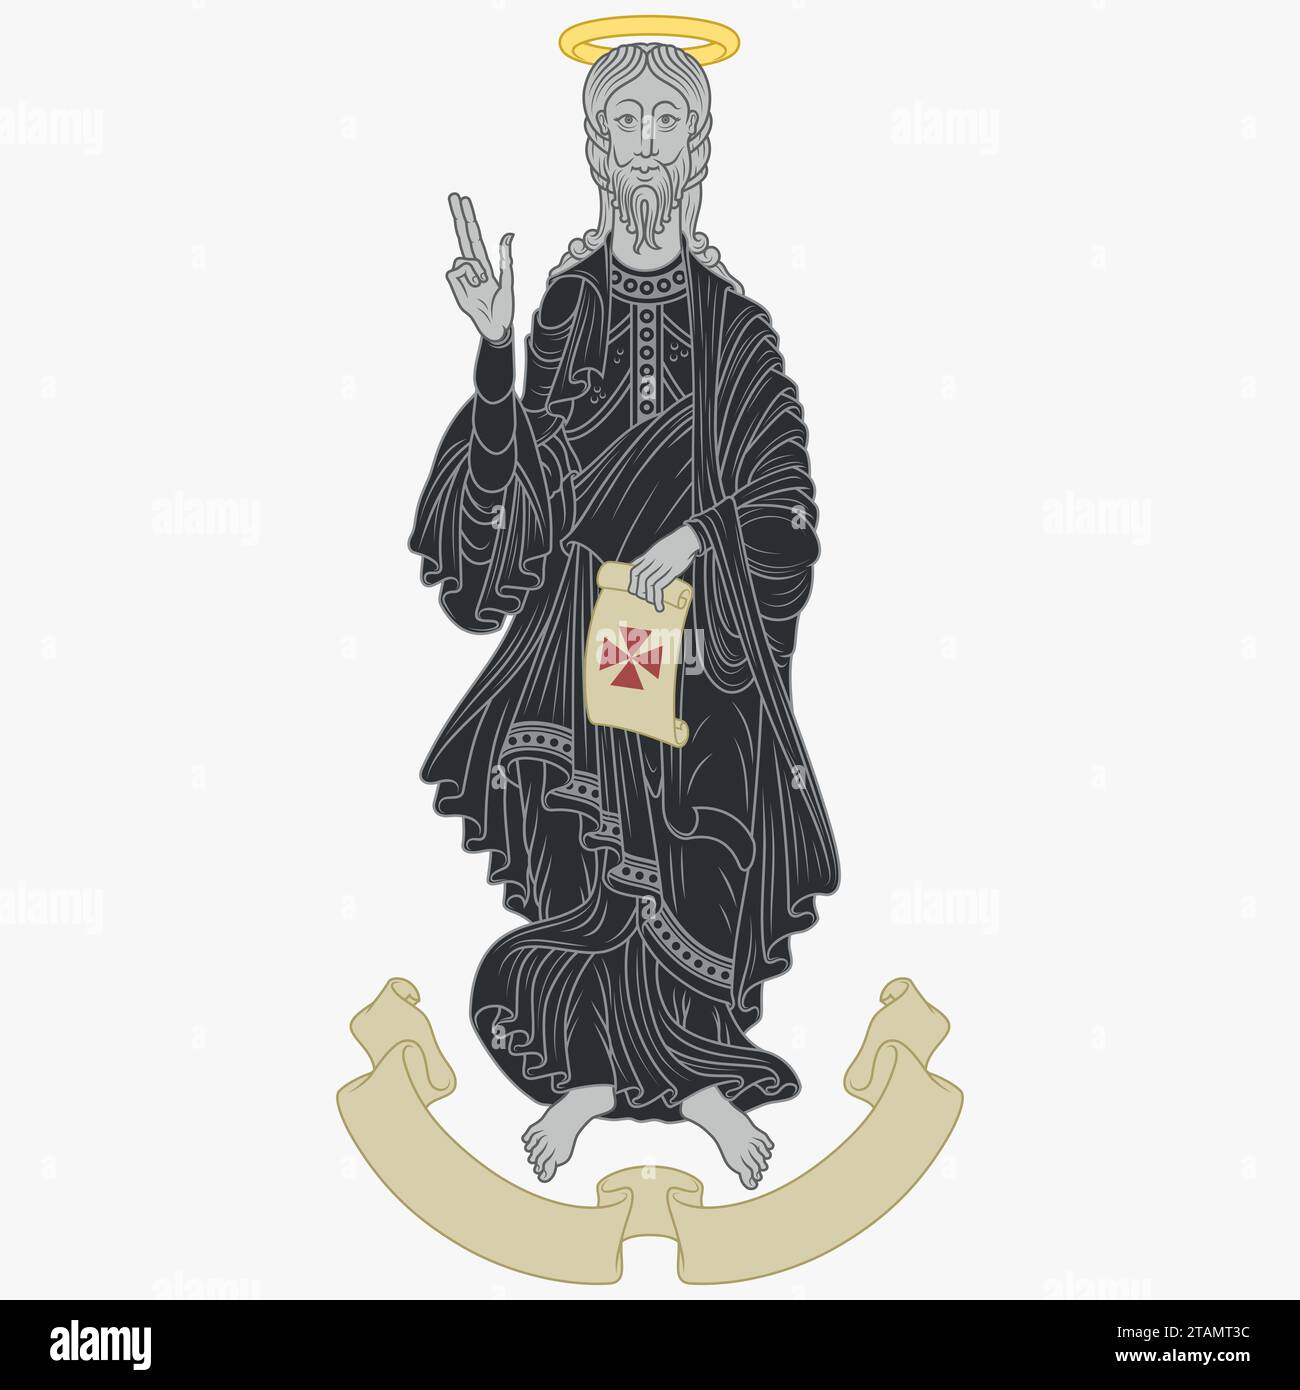 Conception vectorielle de l'apôtre Jacques avec parchemin ancien, art chrétien du Moyen âge Illustration de Vecteur